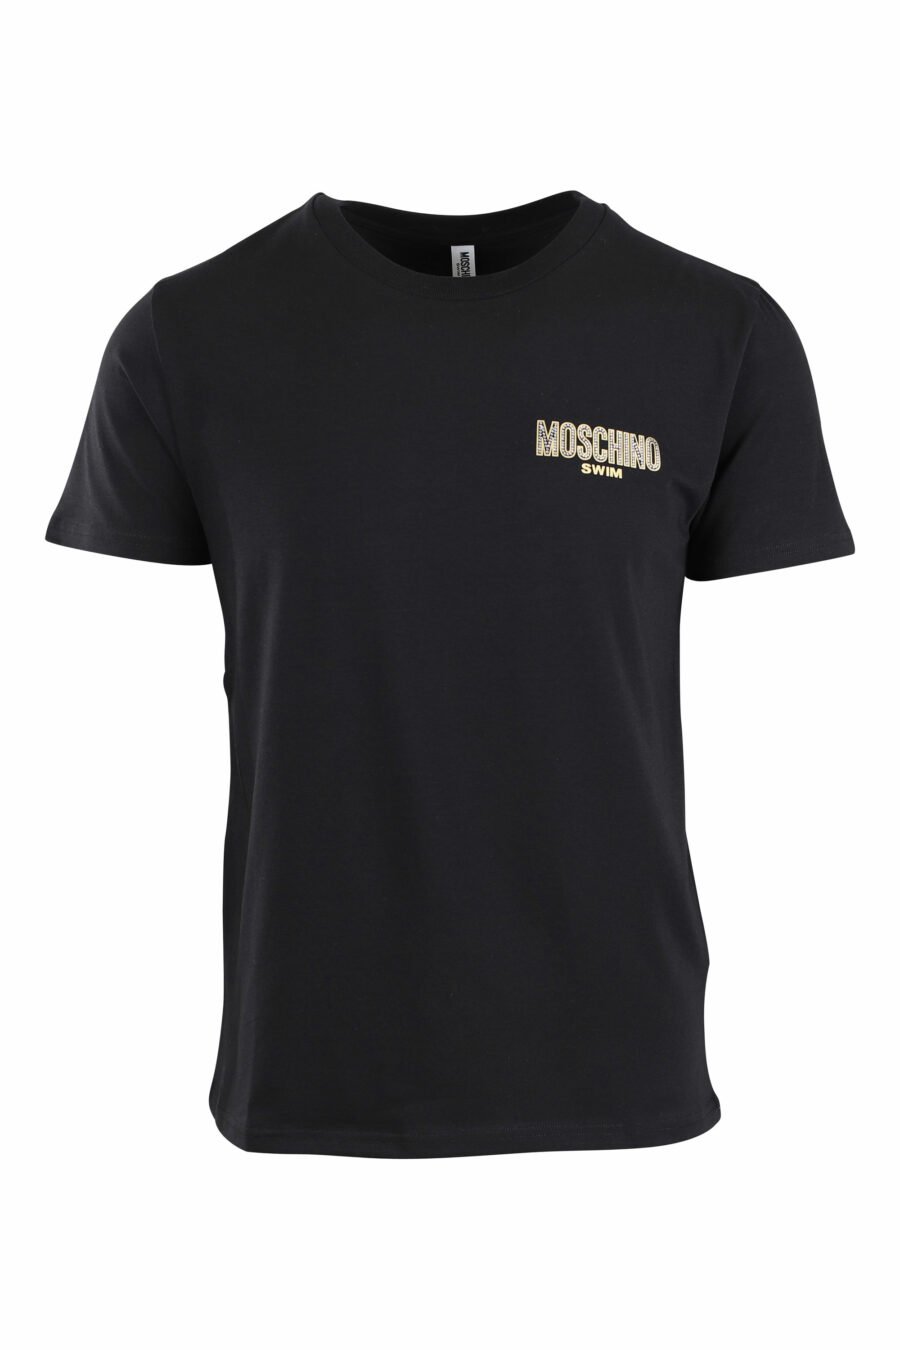 T-shirt preta com pequeno logótipo dourado com strass - IMG 2654